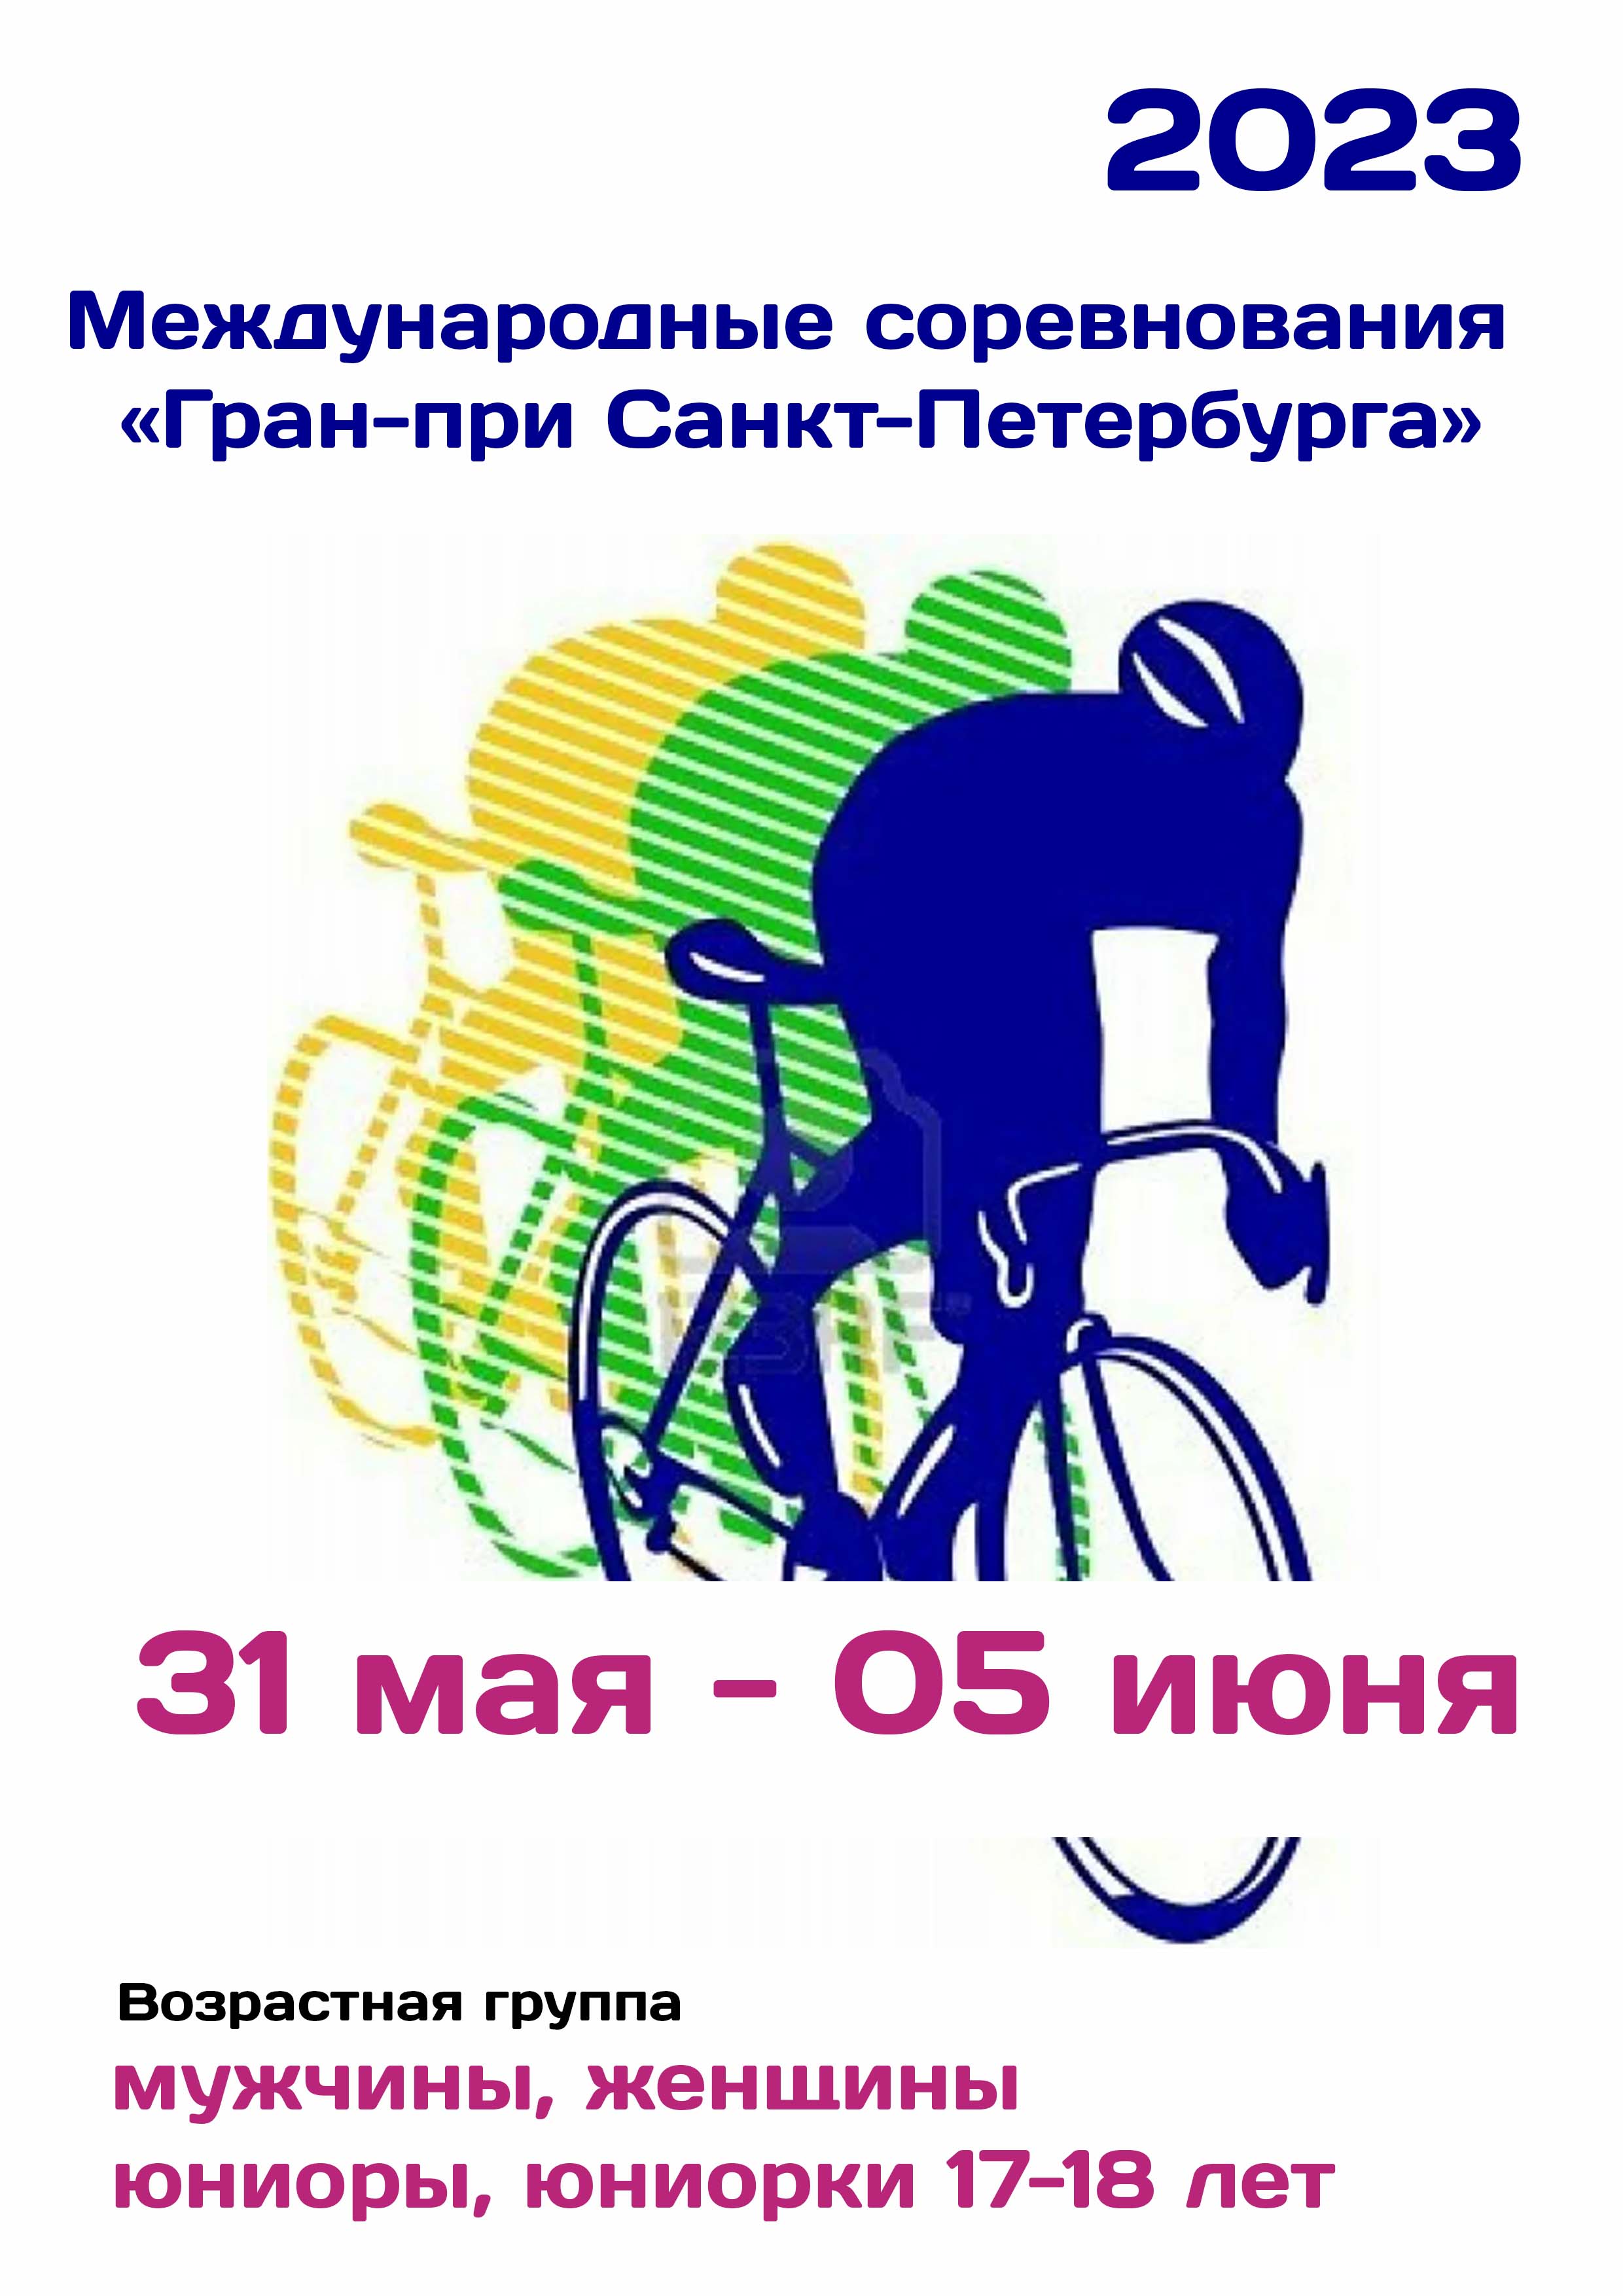 Международные соревнования «Гран-при Санкт-Петербурга»  по велоспорту 31  Mungkin
 2023  tahun
 